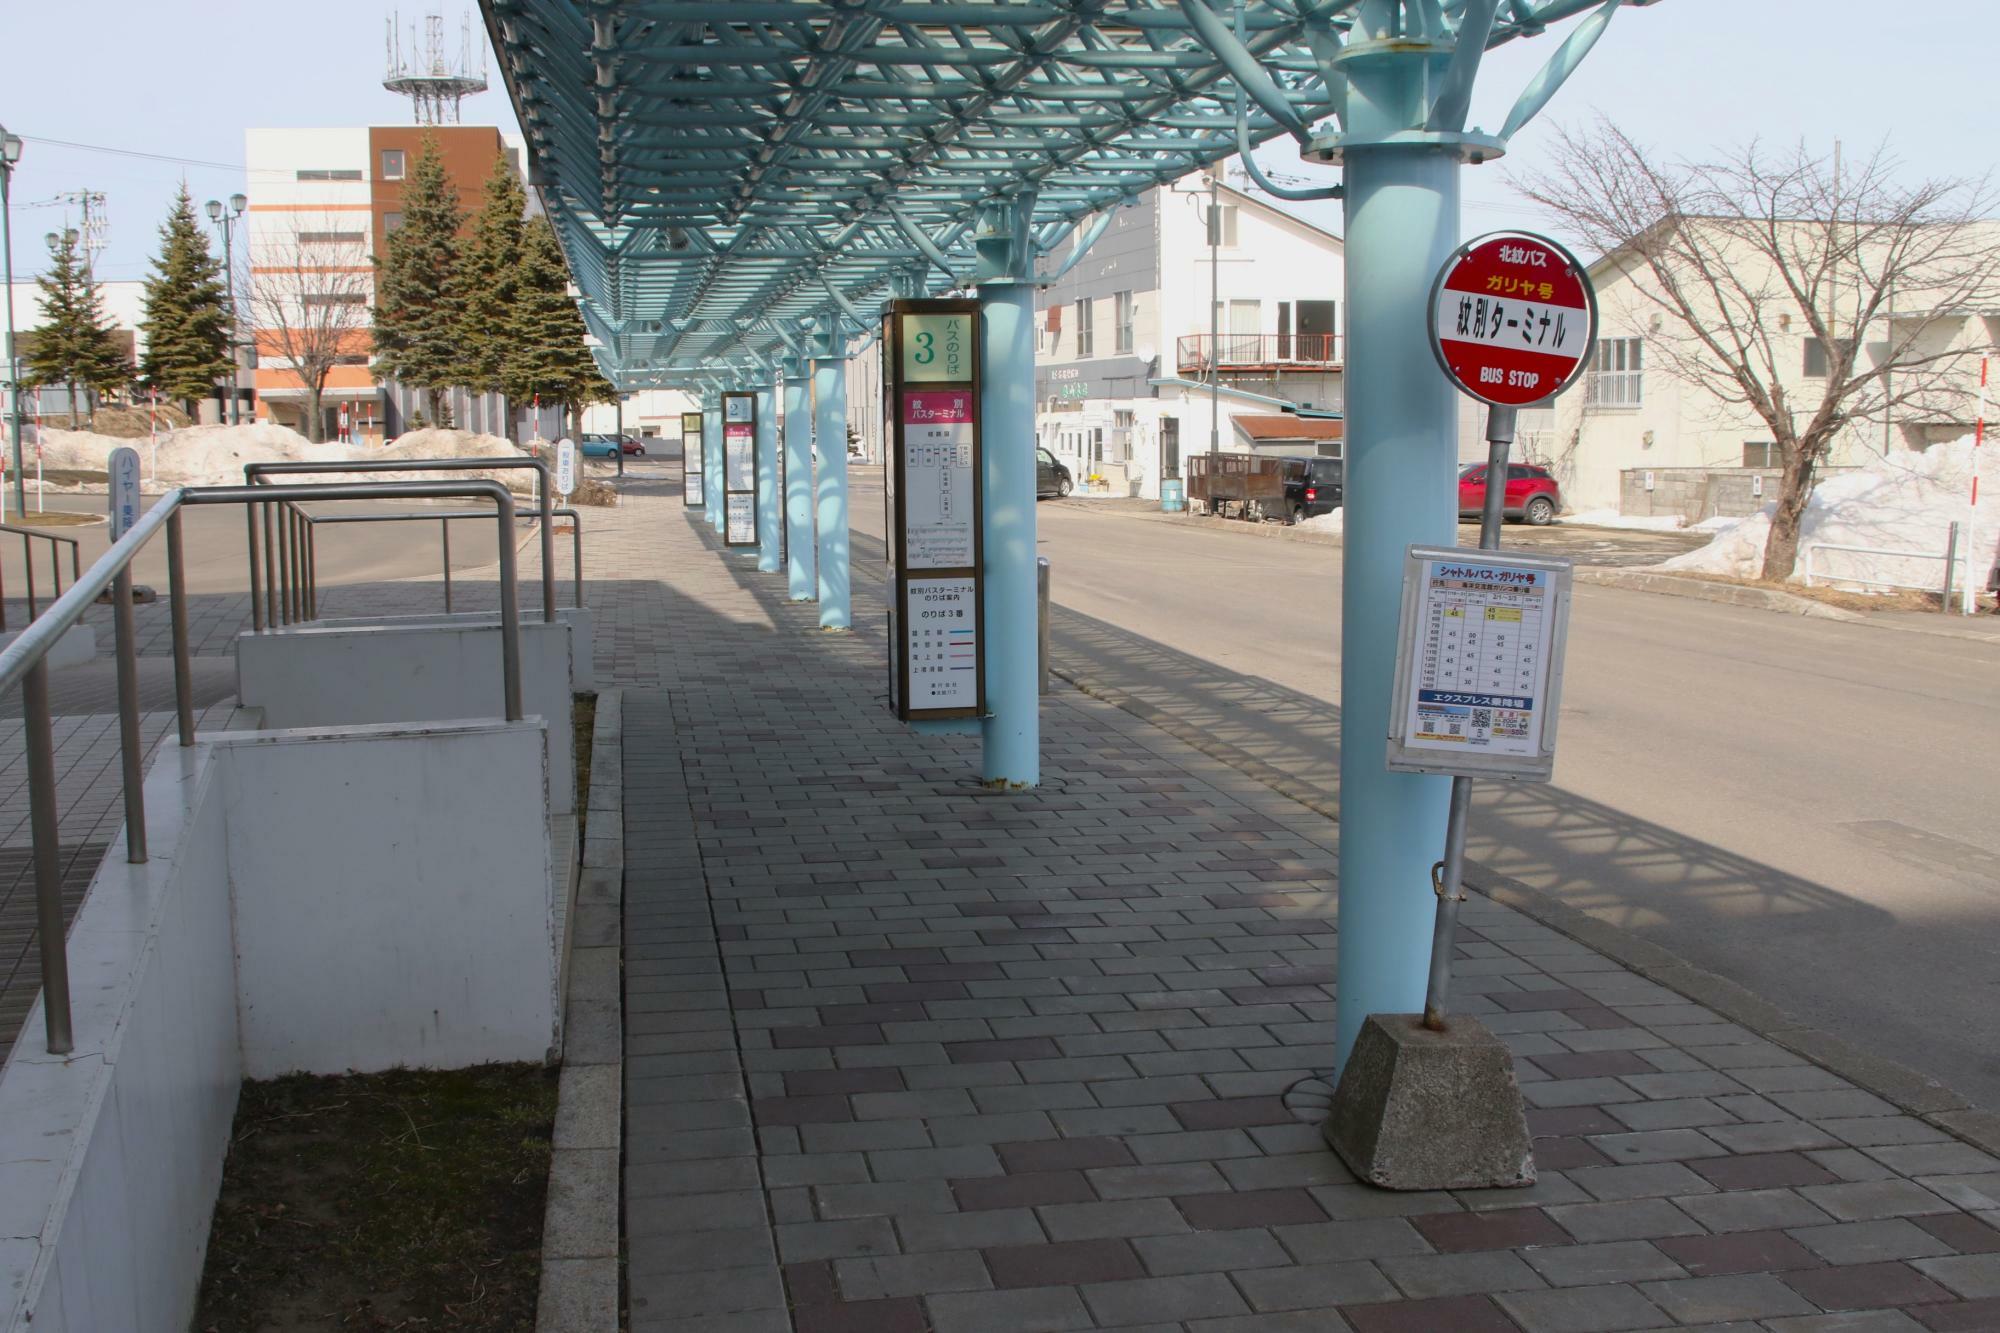 バス停は奥から1番、2番、3番、ガリヤ号(冬季限定)の順